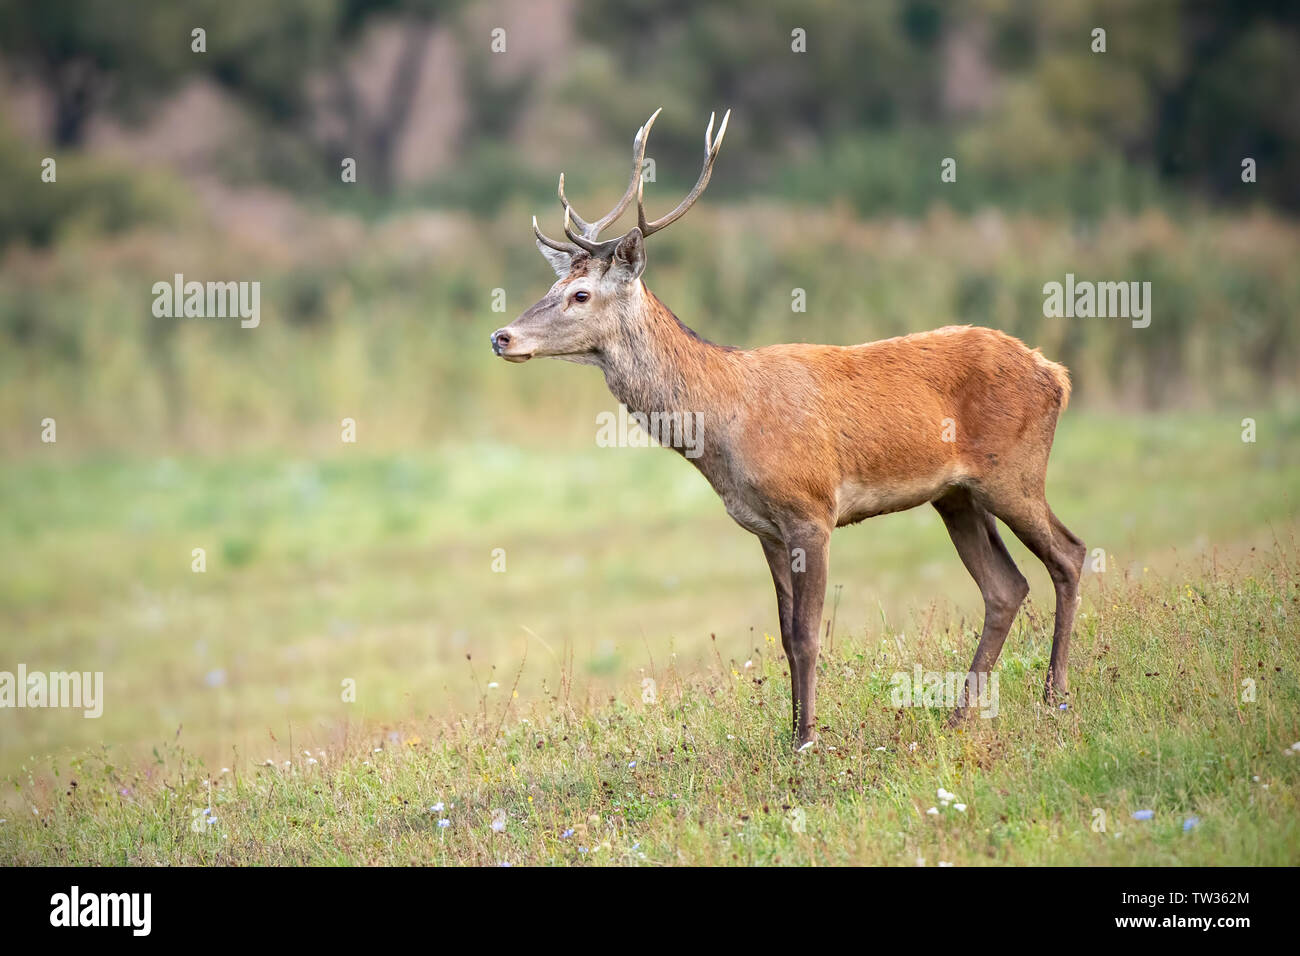 Les jeunes red deer, Cervus elaphus, stag sur une pelouse à l'arrière-plan flou. Animaux sauvages dans la nature. La faune paisible paysage. Banque D'Images